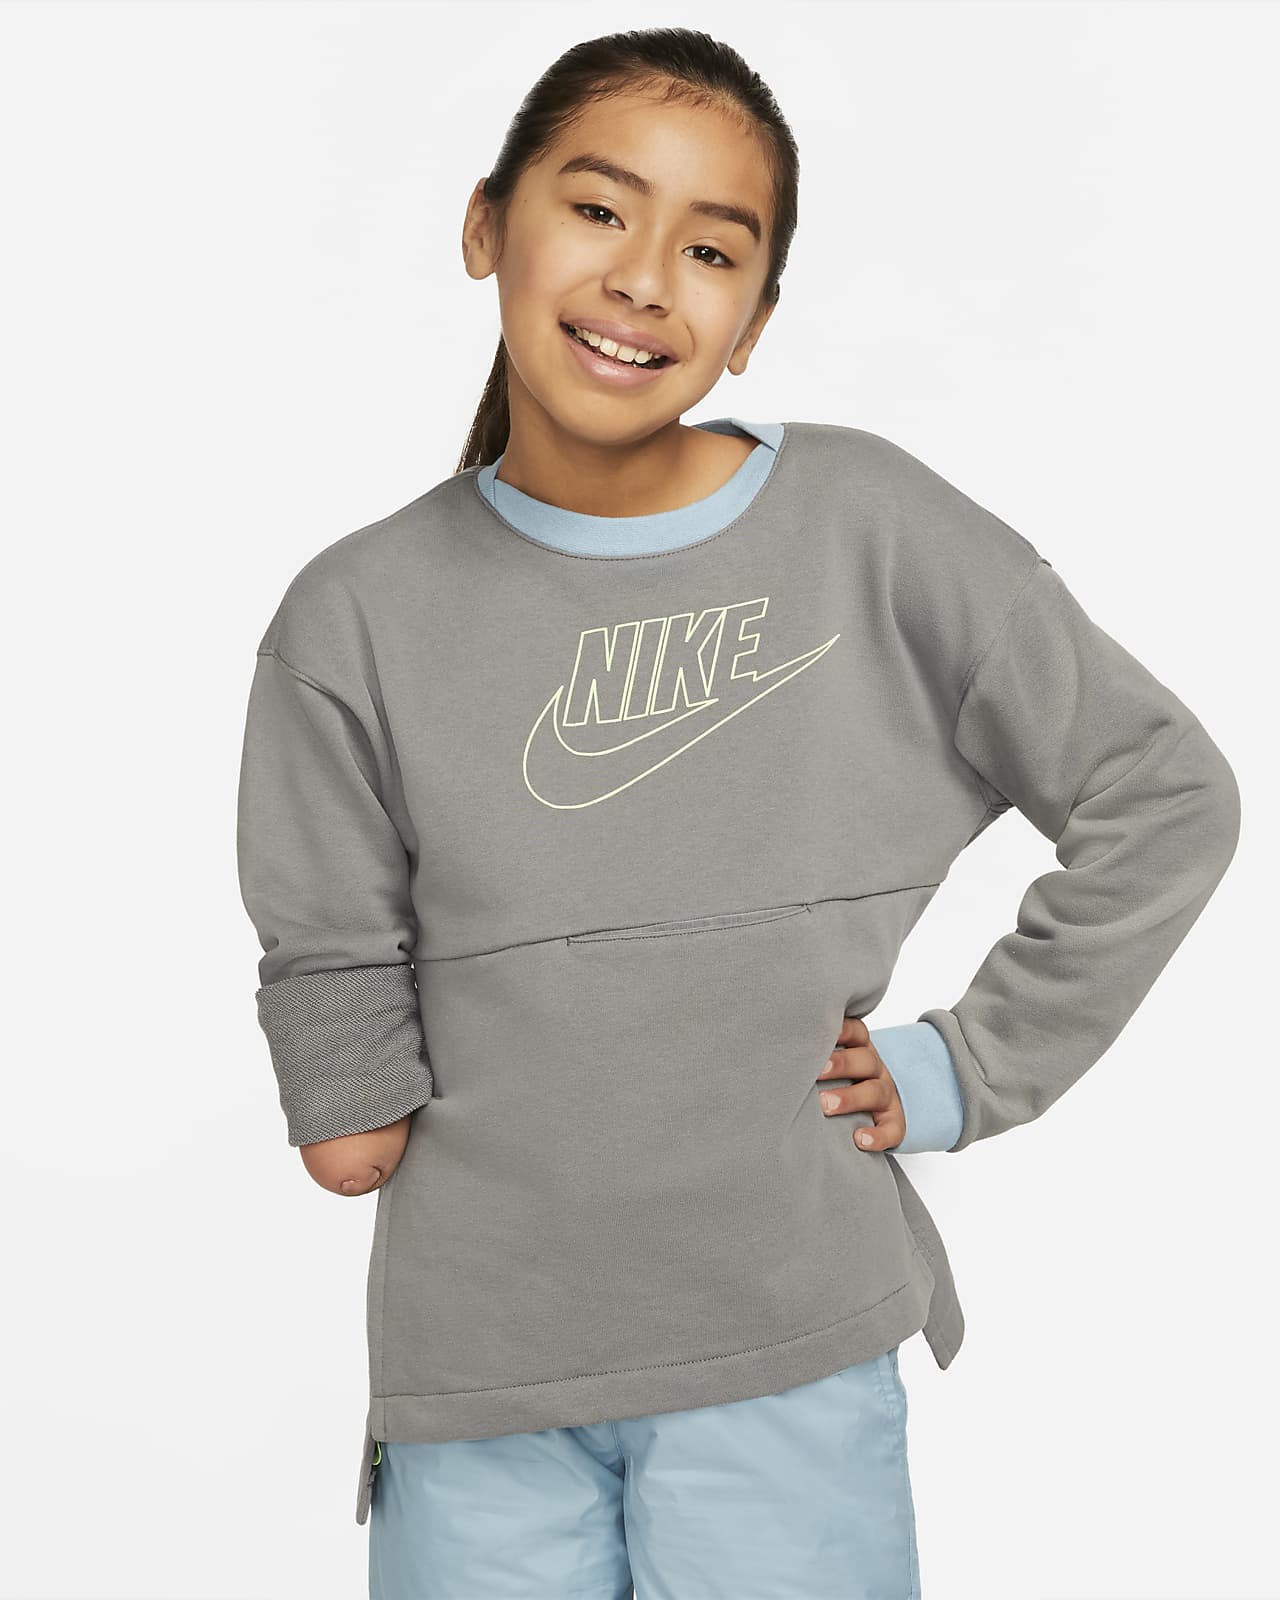 Nike Sportswear Kids Pack Older Kids' French Terry Sweatshirt